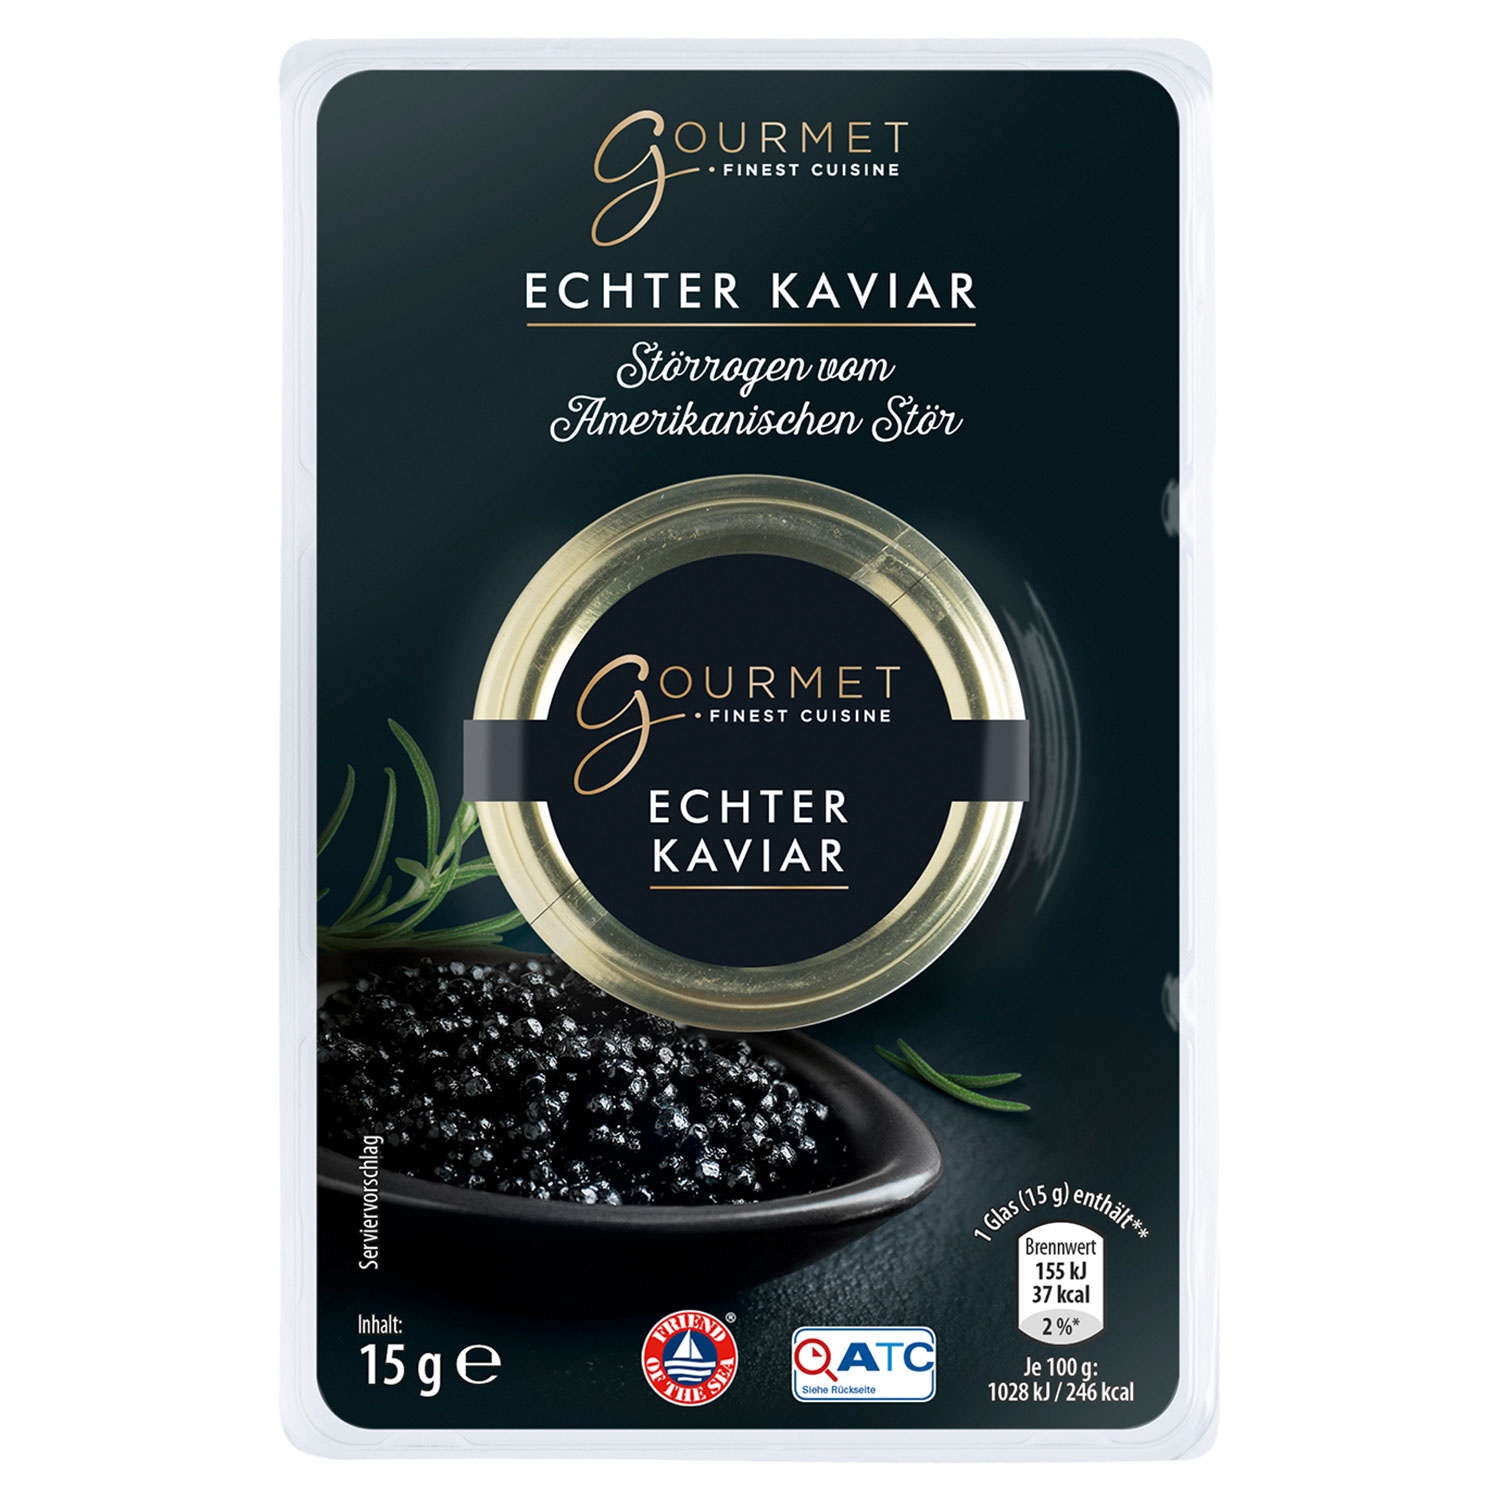 GOURMET FINEST CUISINE Echter Kaviar 15 g